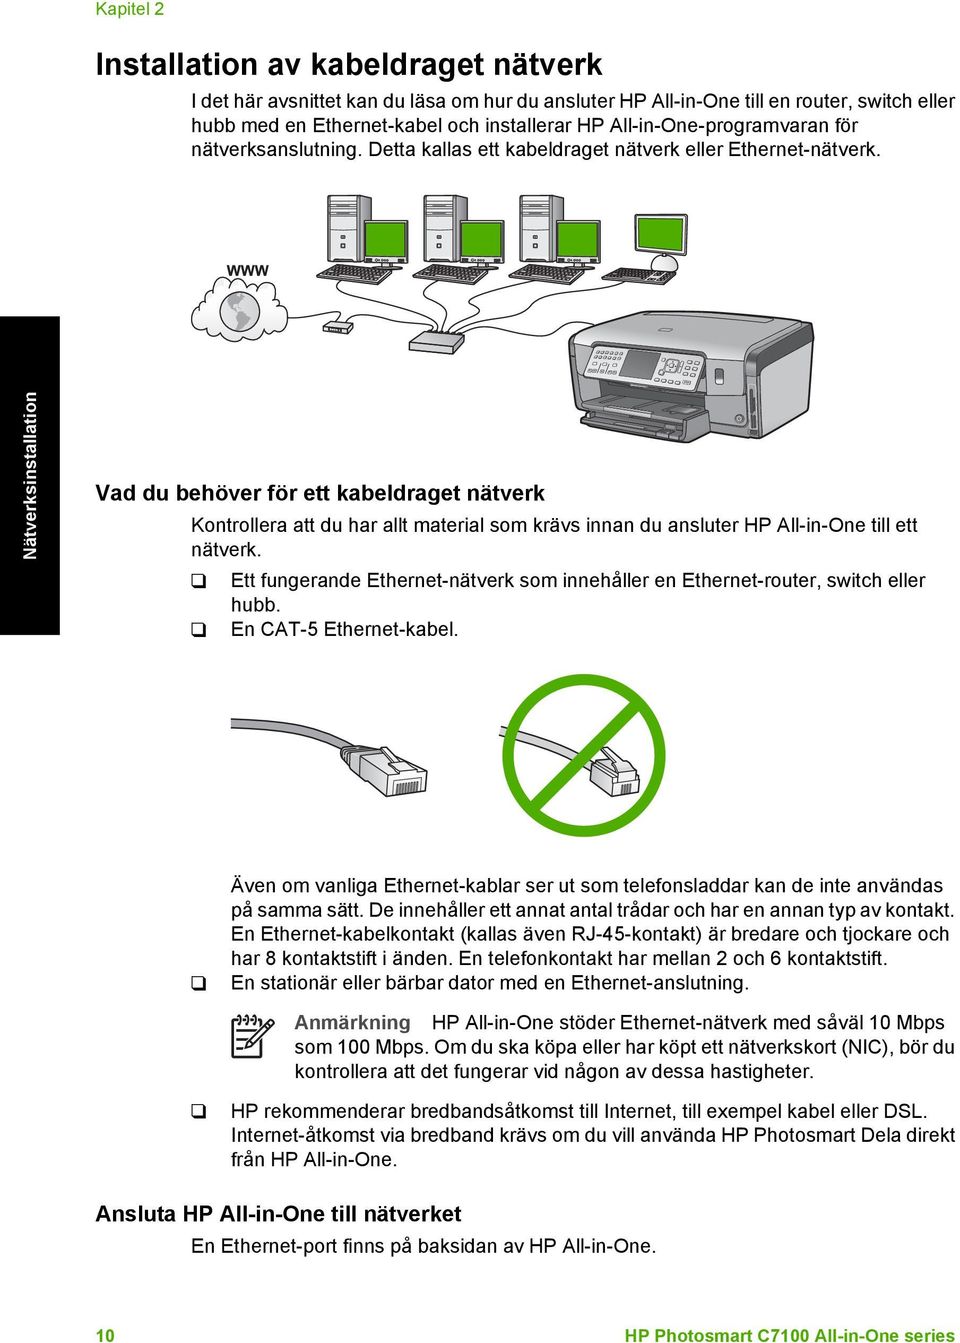 Nätverksinstallation Vad du behöver för ett kabeldraget nätverk Kontrollera att du har allt material som krävs innan du ansluter HP All-in-One till ett nätverk.